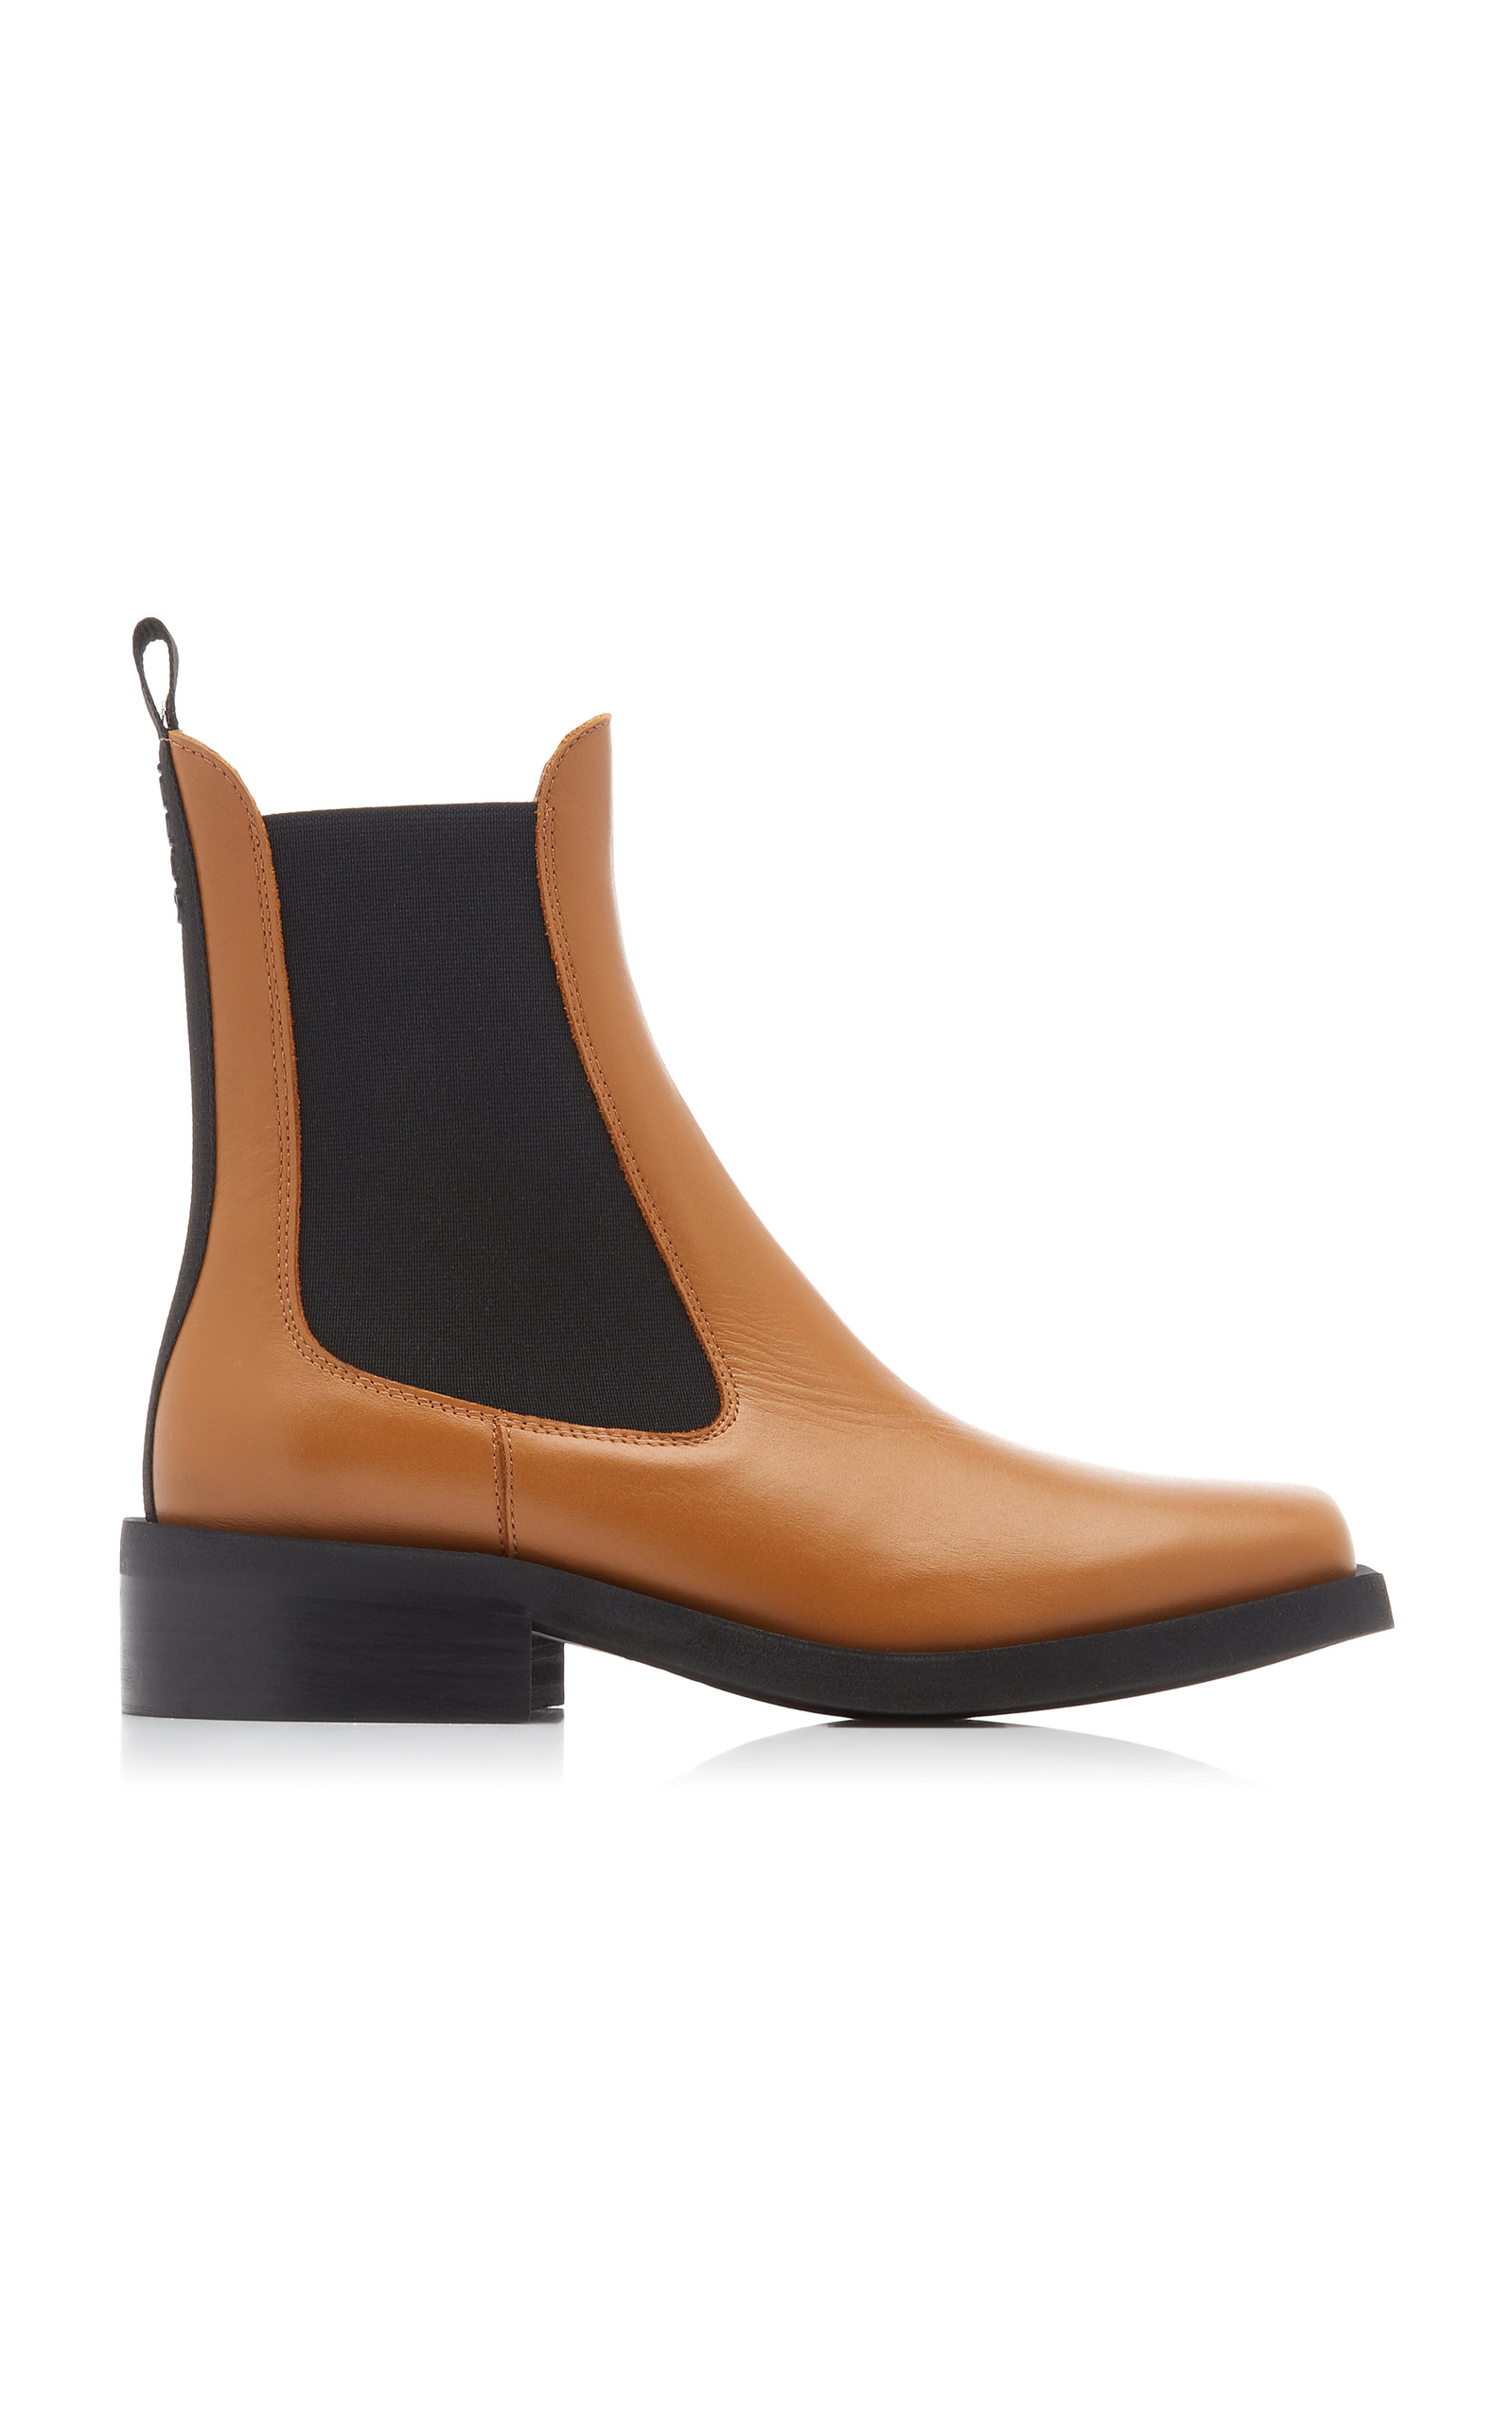 Ganni - Women's Wide-Welt Leather Chelsea Boots - Brown - IT 37 - Moda Operandi